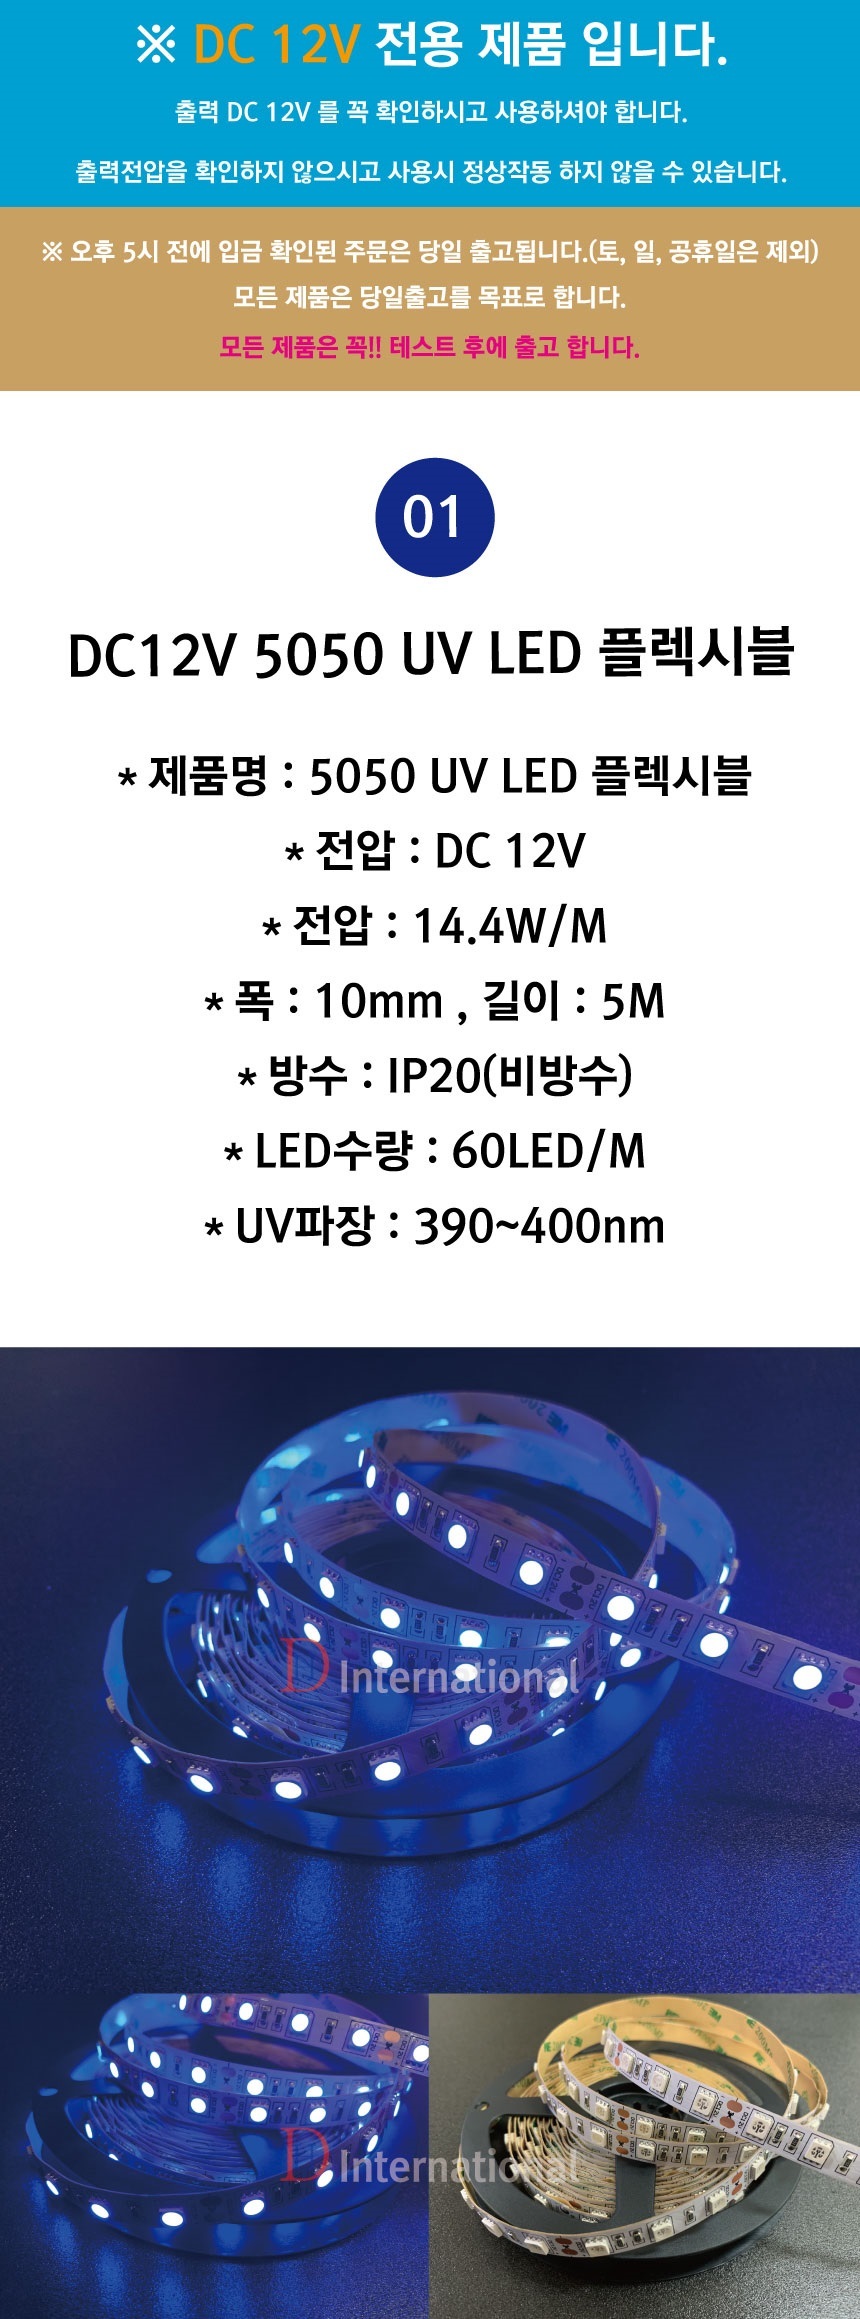 UV-LED-%ED%94%8C%EB%A0%89%EC%8B%9C%EB%B8